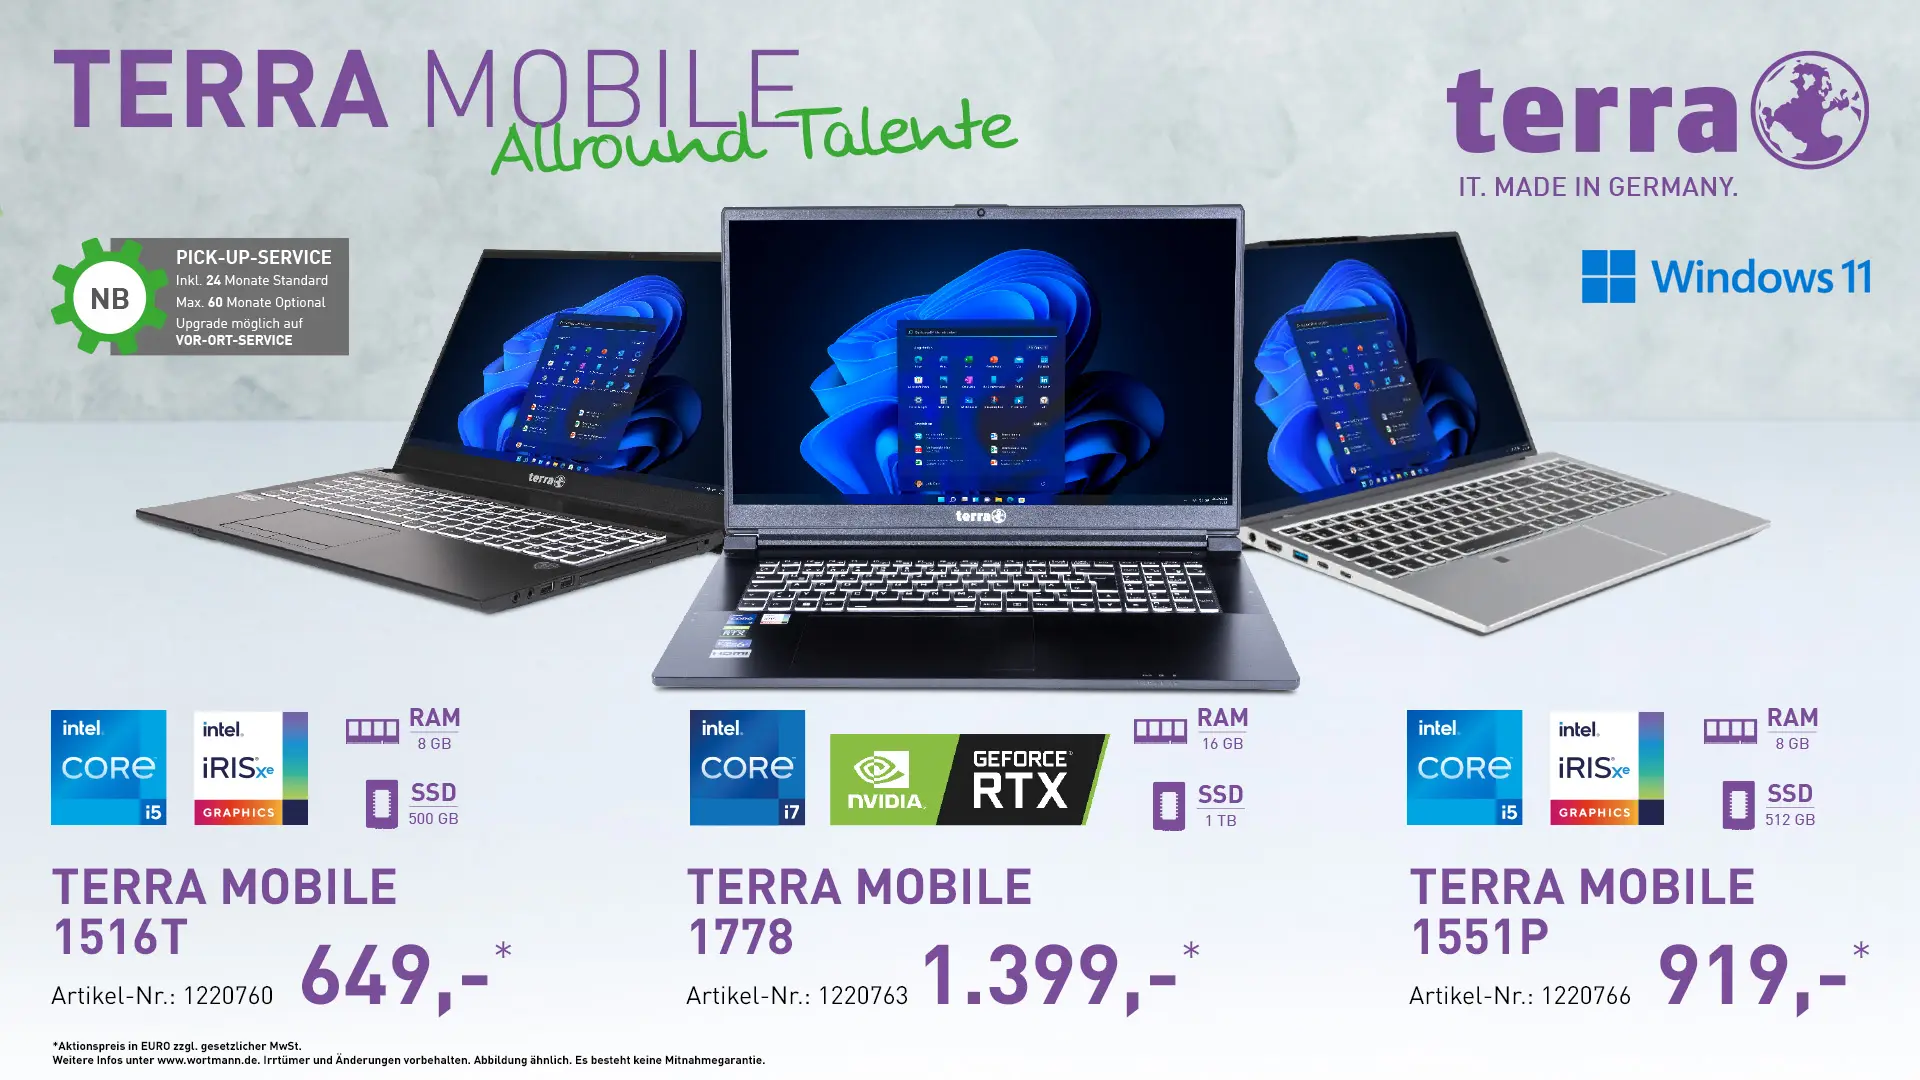 Terra Mobile 1778, Terra Mobile 1516t, Terra Mobile 1551p